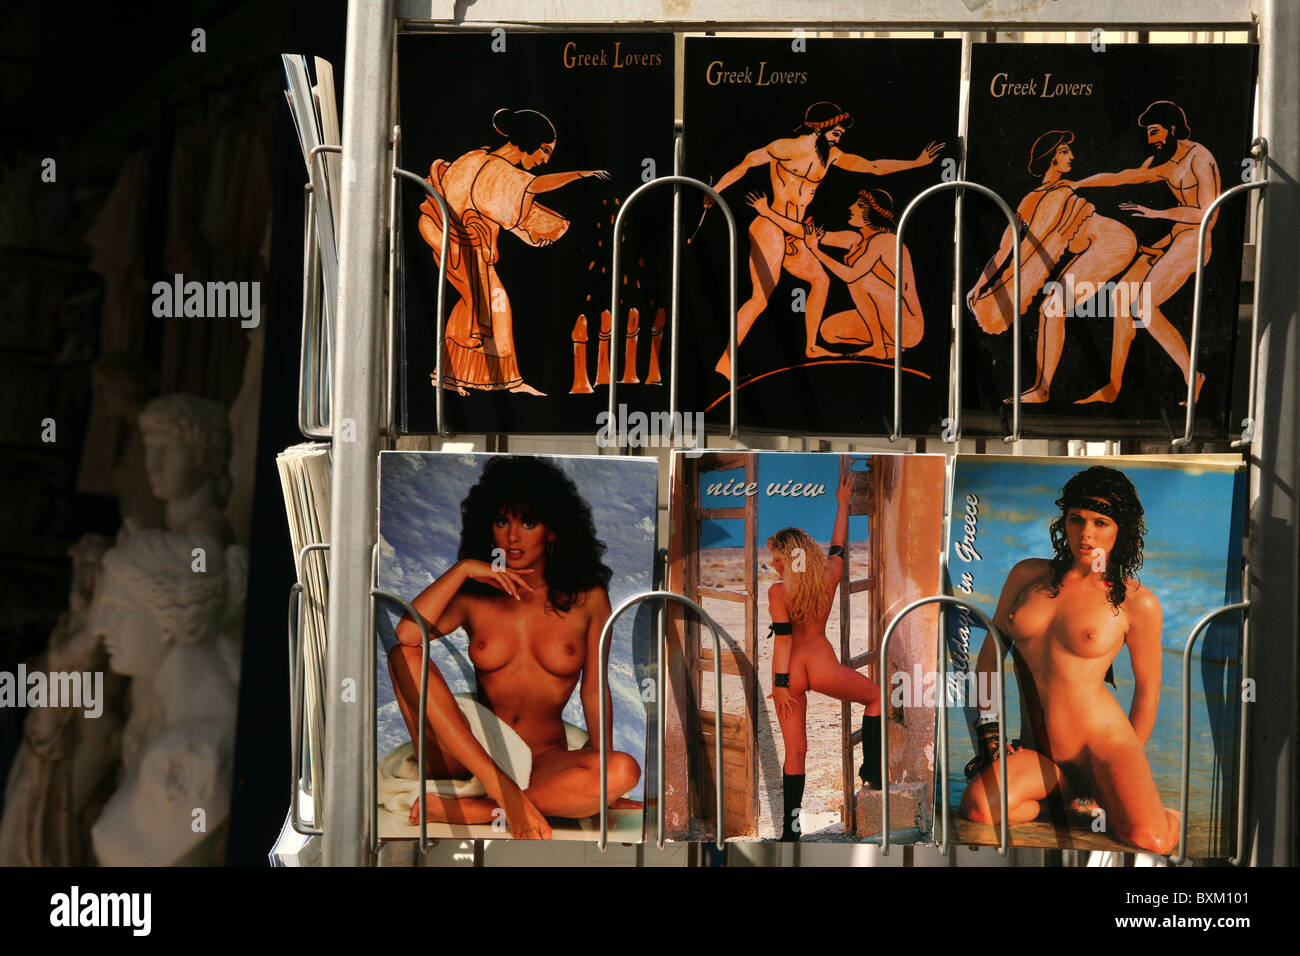 Cartes postales érotiques dans le style de red-figure vase poterie peinture dans un magasin de souvenirs dans le quartier de Plaka à Athènes, Grèce. Banque D'Images